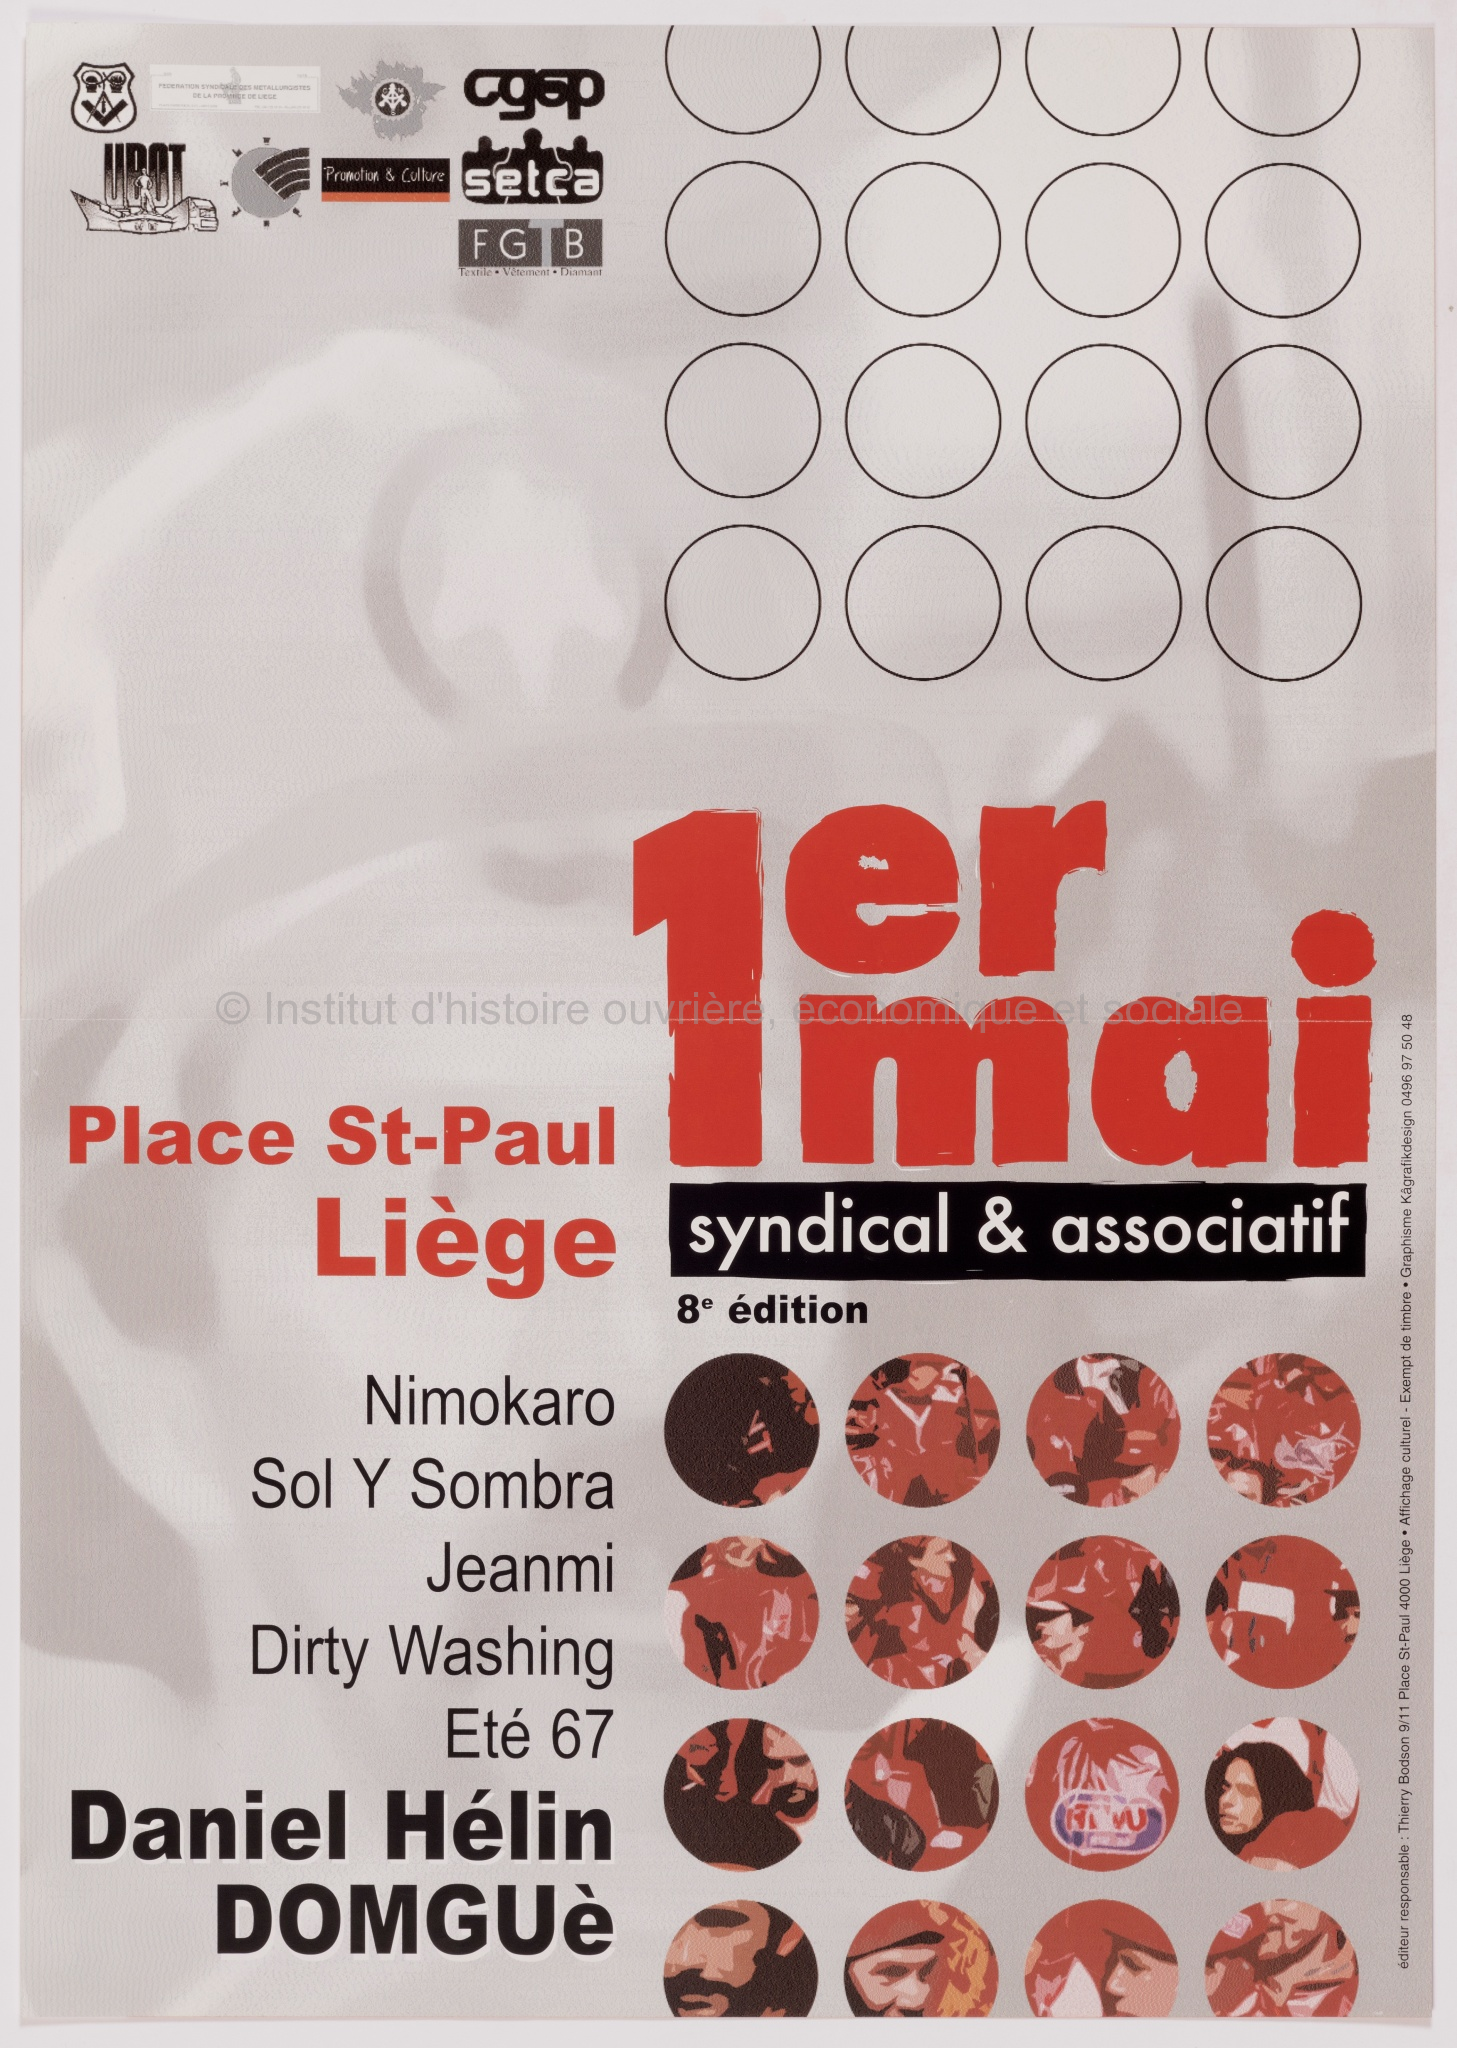 1er mai syndical & association : 8e édition : Place St-Paul, Liège